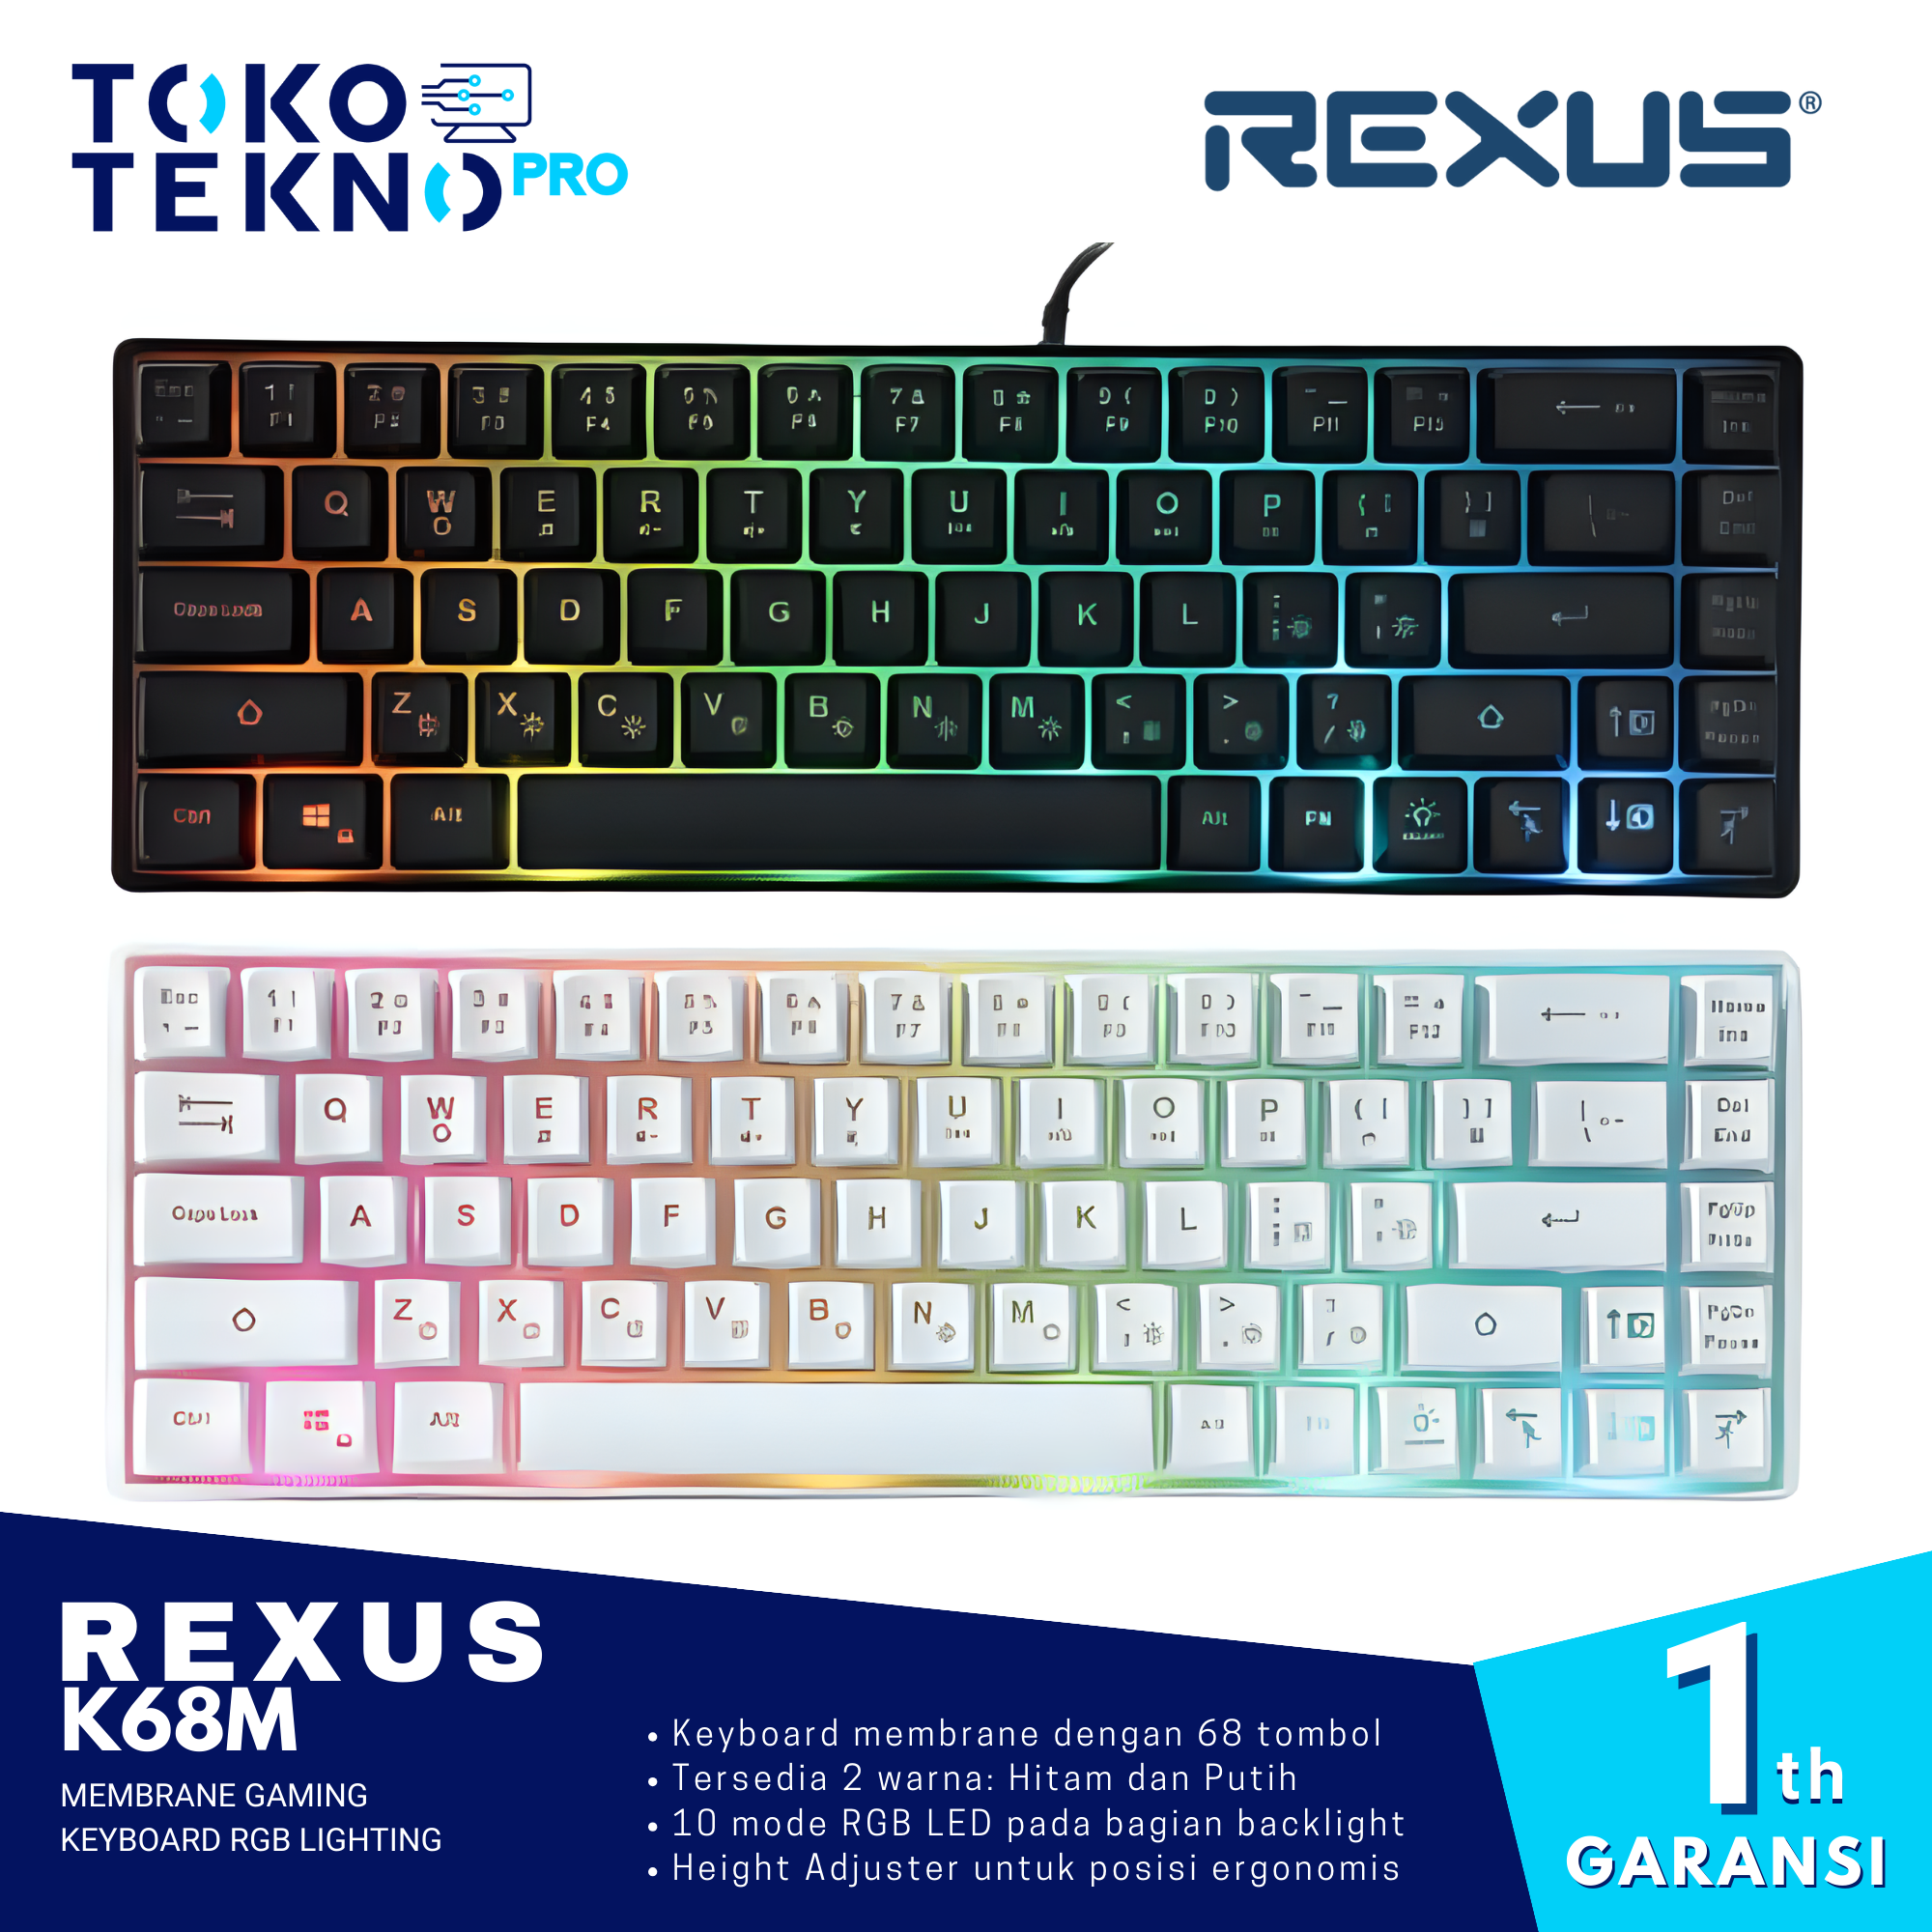 Rexus K68M Membrane Gaming Keyboard RGB Lighting